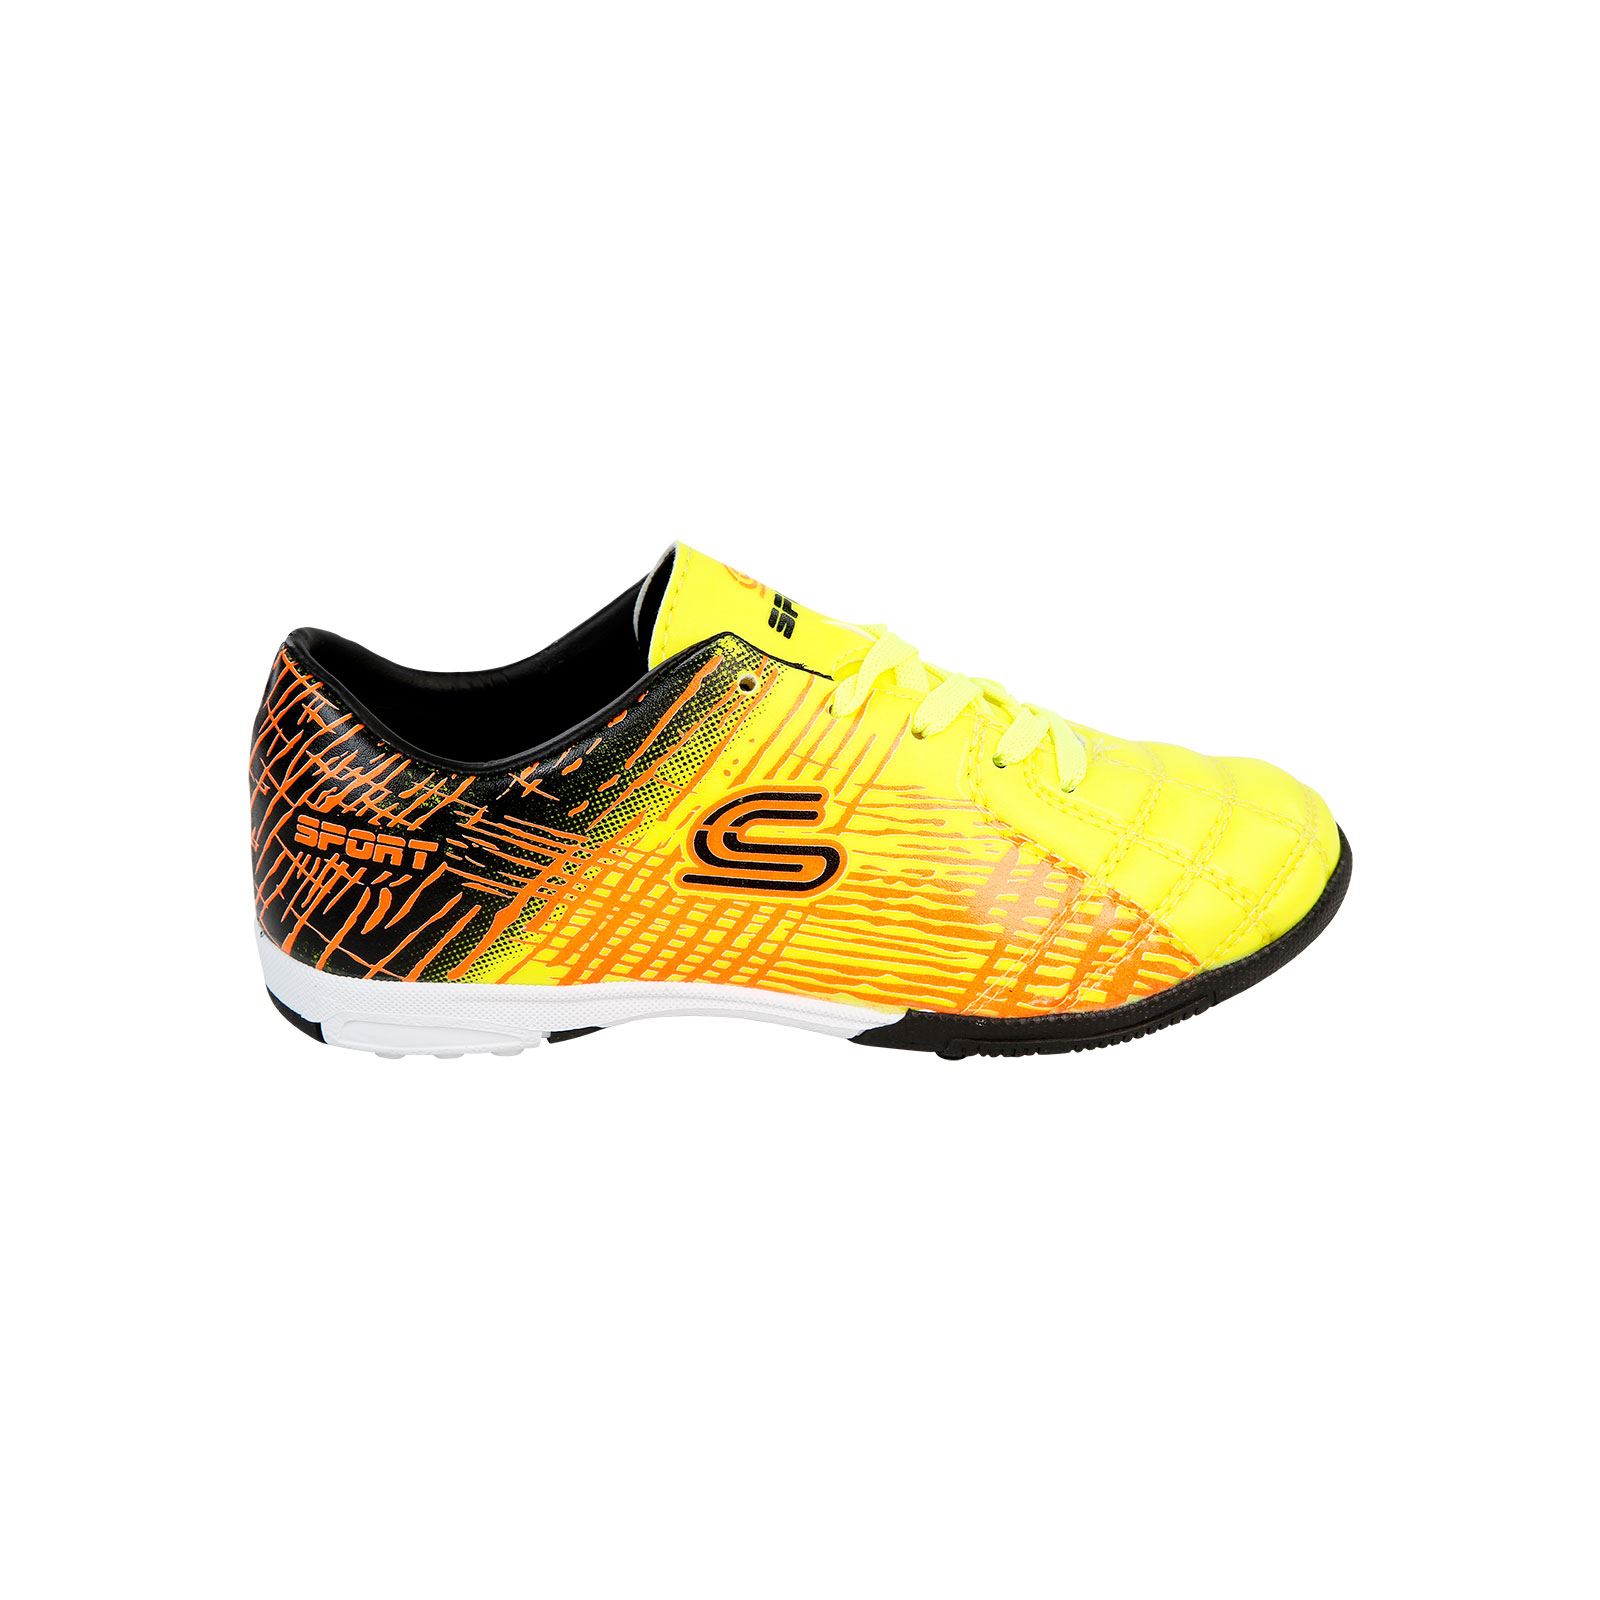 Sport Erkek Çocuk Halı Saha Spor Ayakkabı 28-35 Numara Sarı Sarı